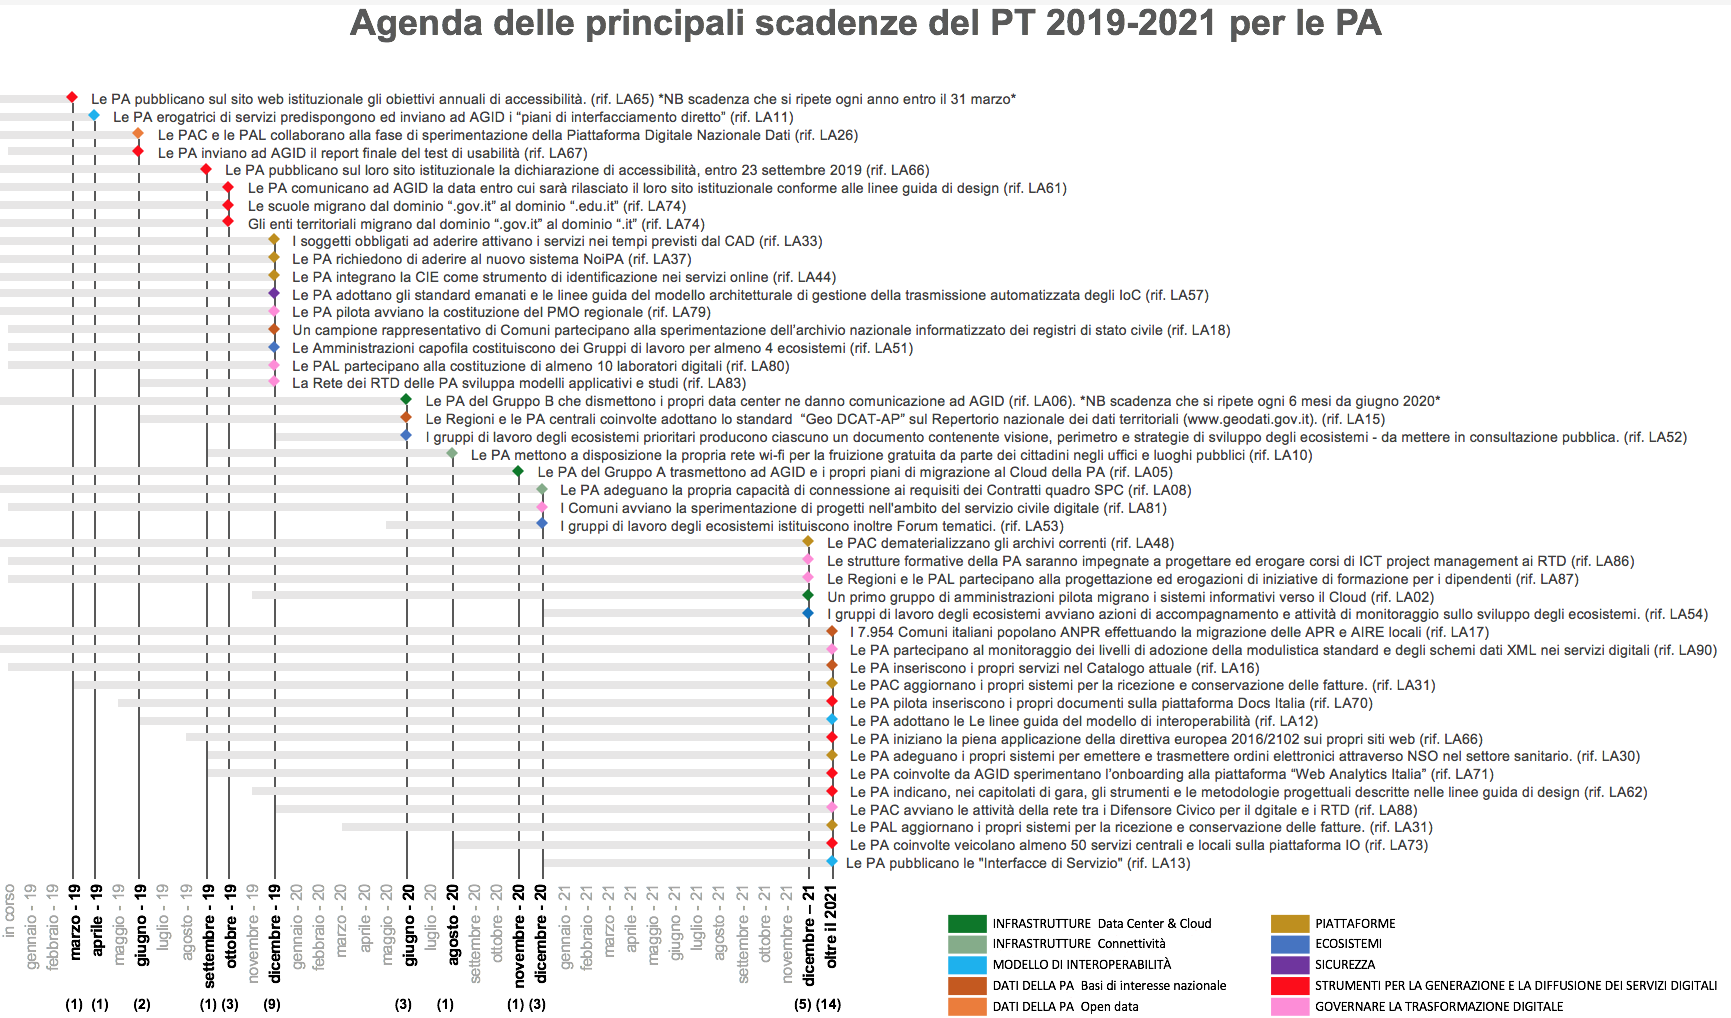 Agenda delle principali scadenze del PT 2019 - 2021 per le PA